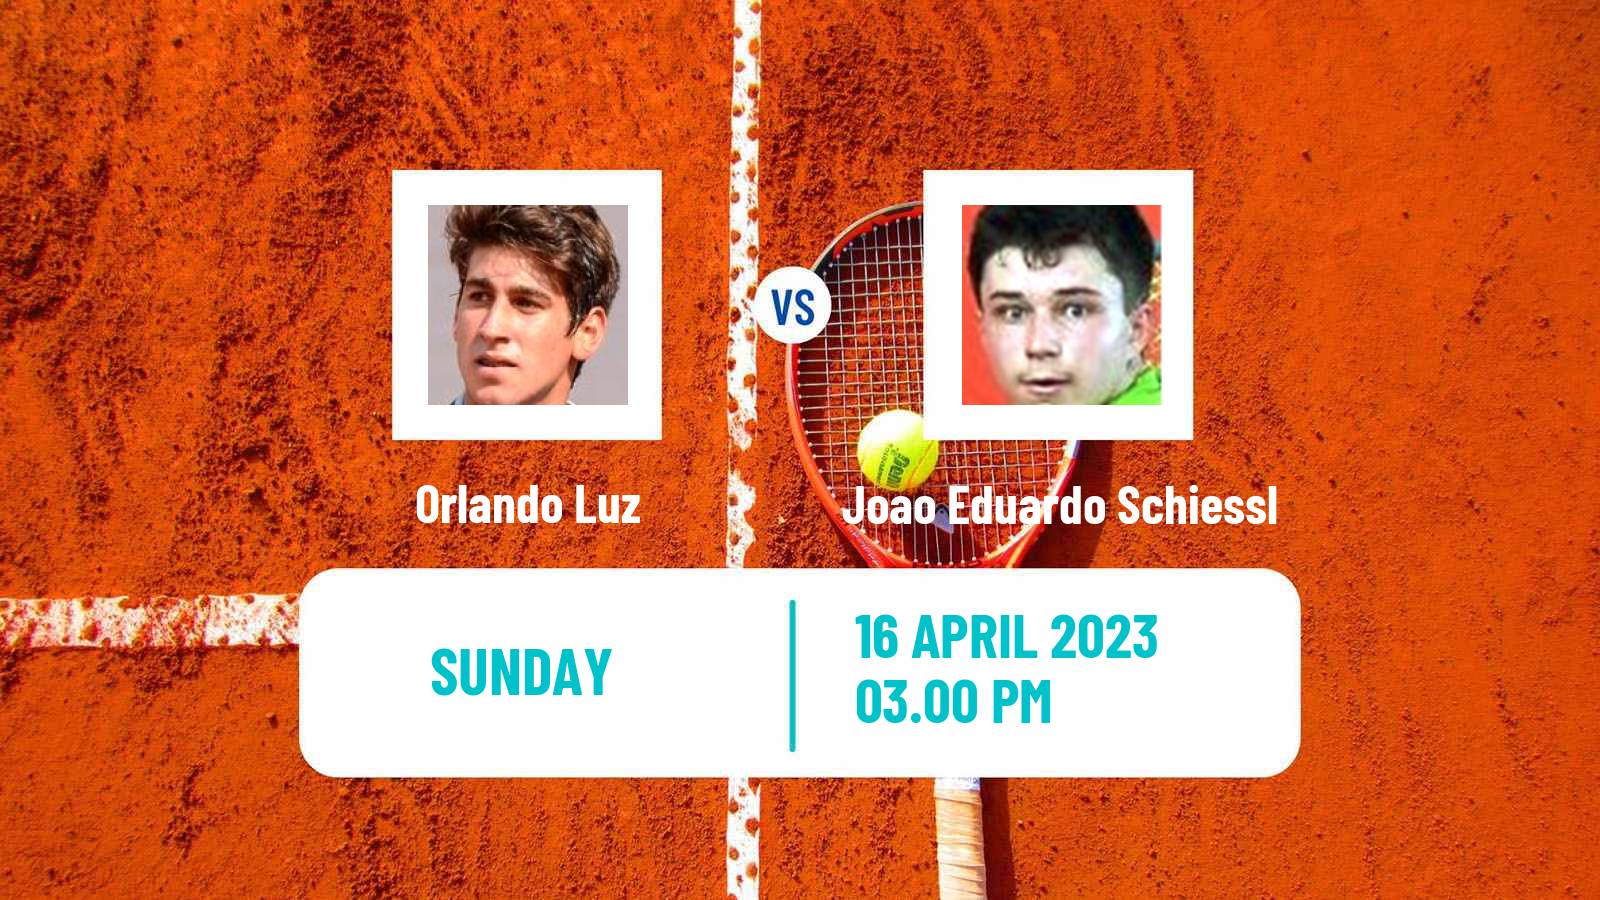 Tennis ATP Challenger Orlando Luz - Joao Eduardo Schiessl